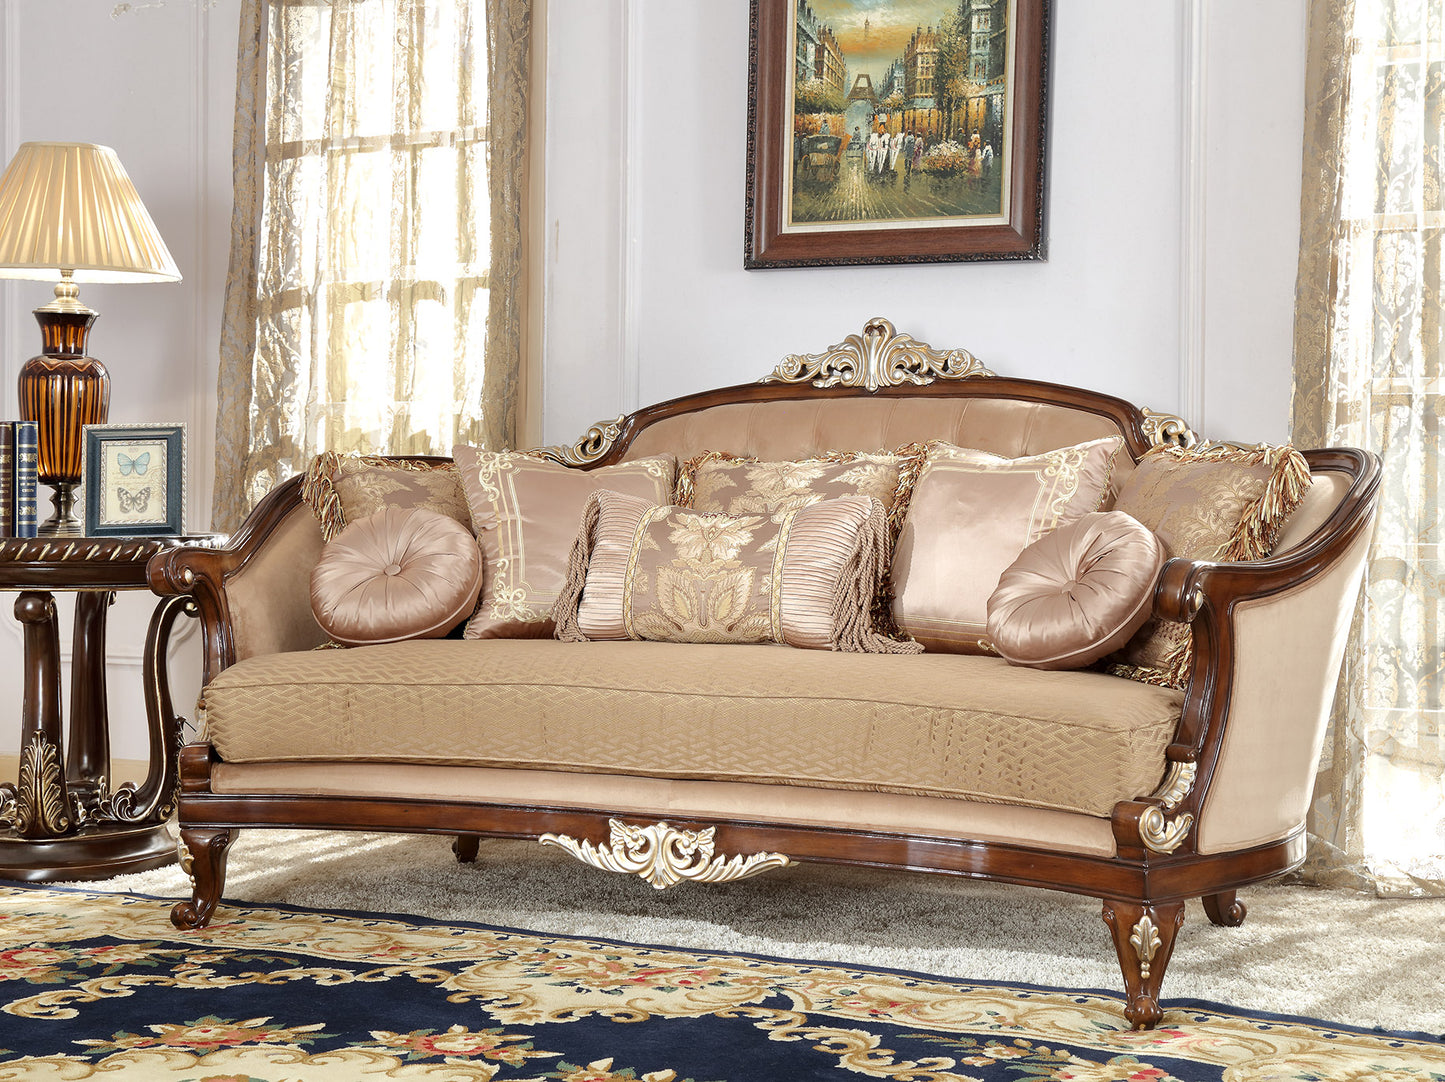 Fabric Sofa in Mahogany Finish S8320 European Traditional Victorian